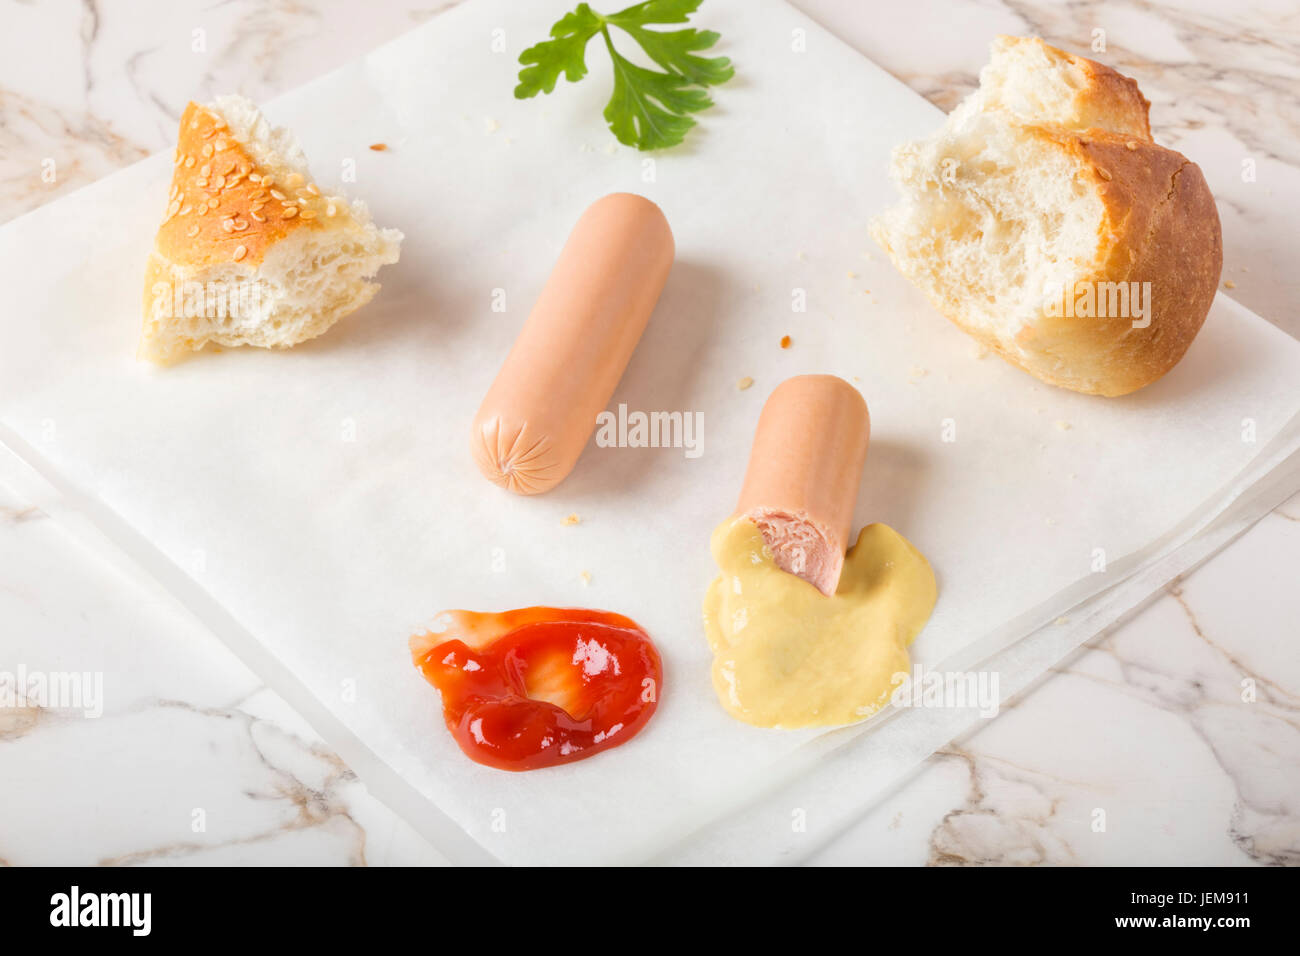 La consommation de saucisses (Frankfurter) sur papier avec du pain, de la moutarde et du ketchup Banque D'Images